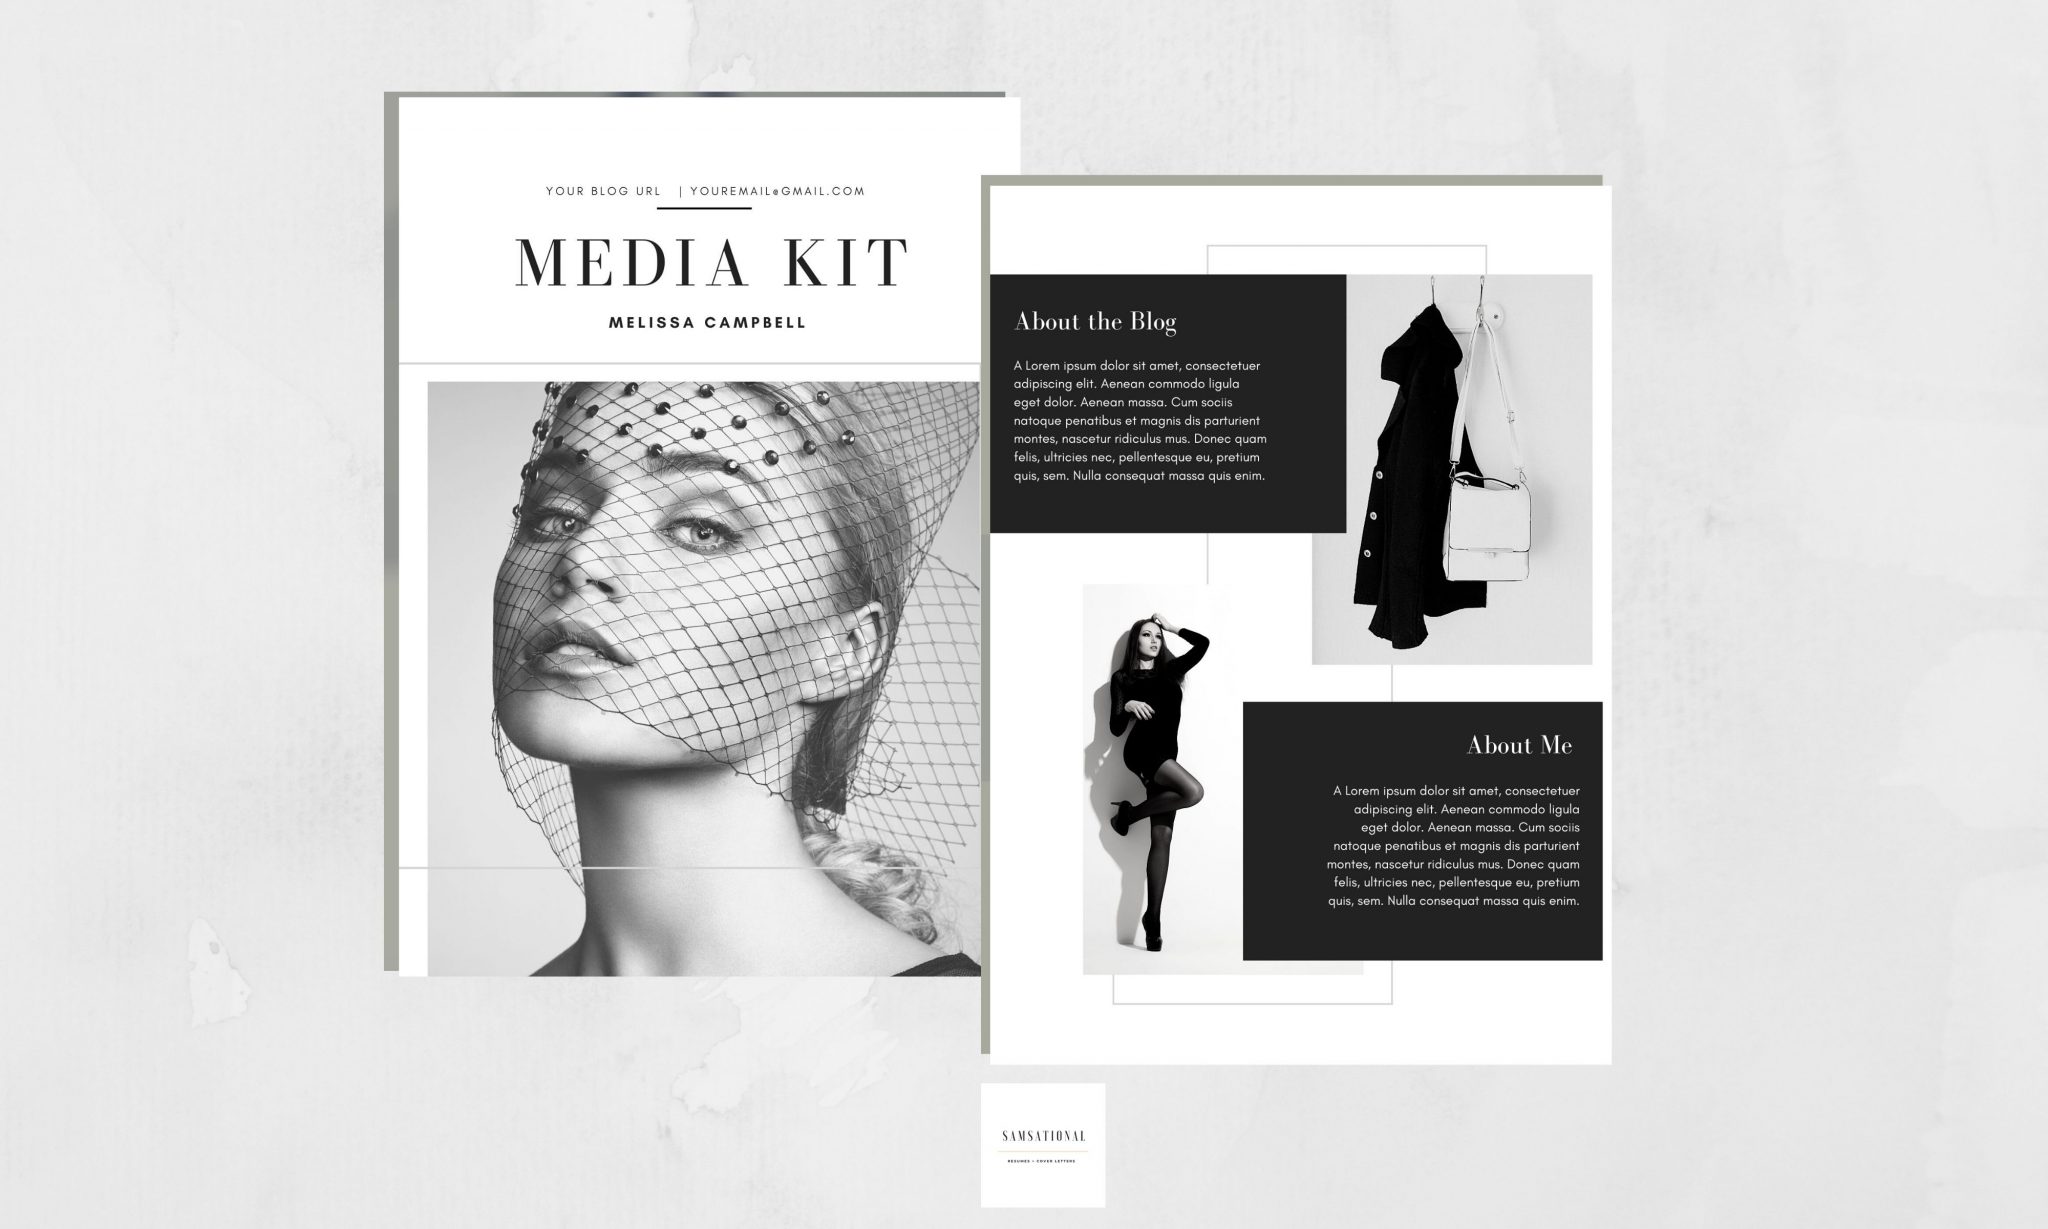 Media Kit for bloggers